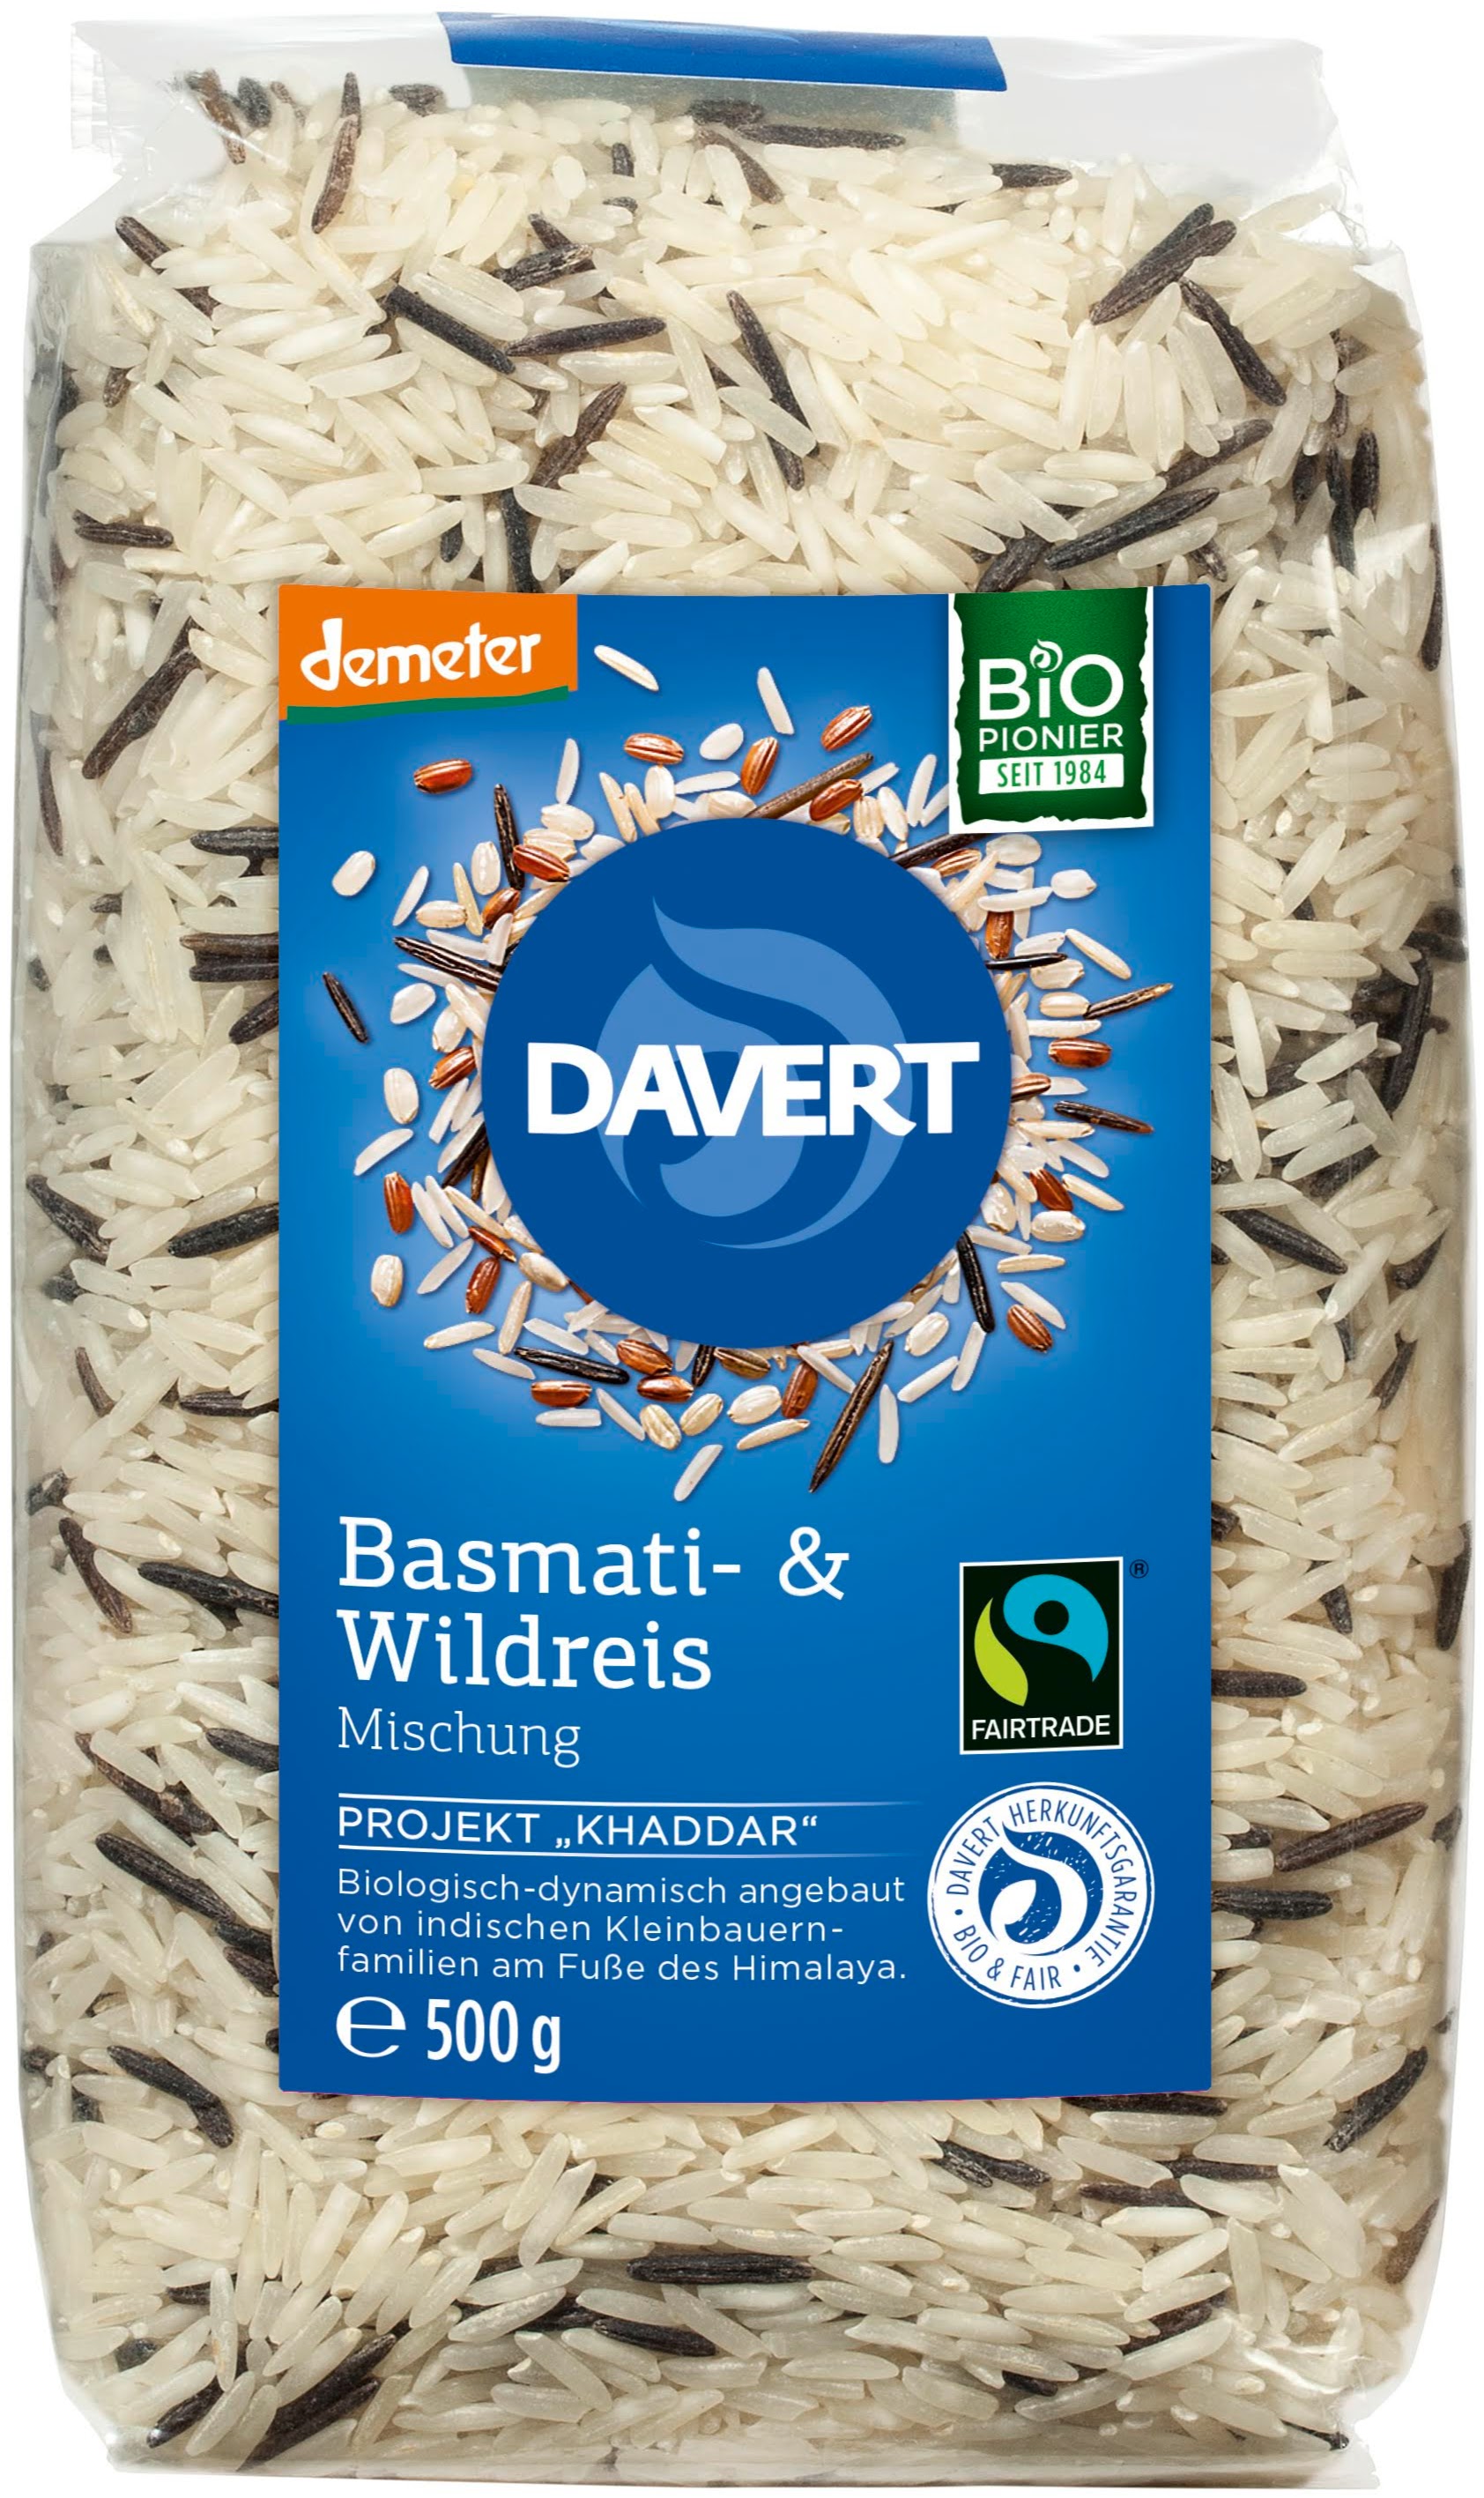 Basmati- & Wildreismischung (Demeter, Fairtrade)